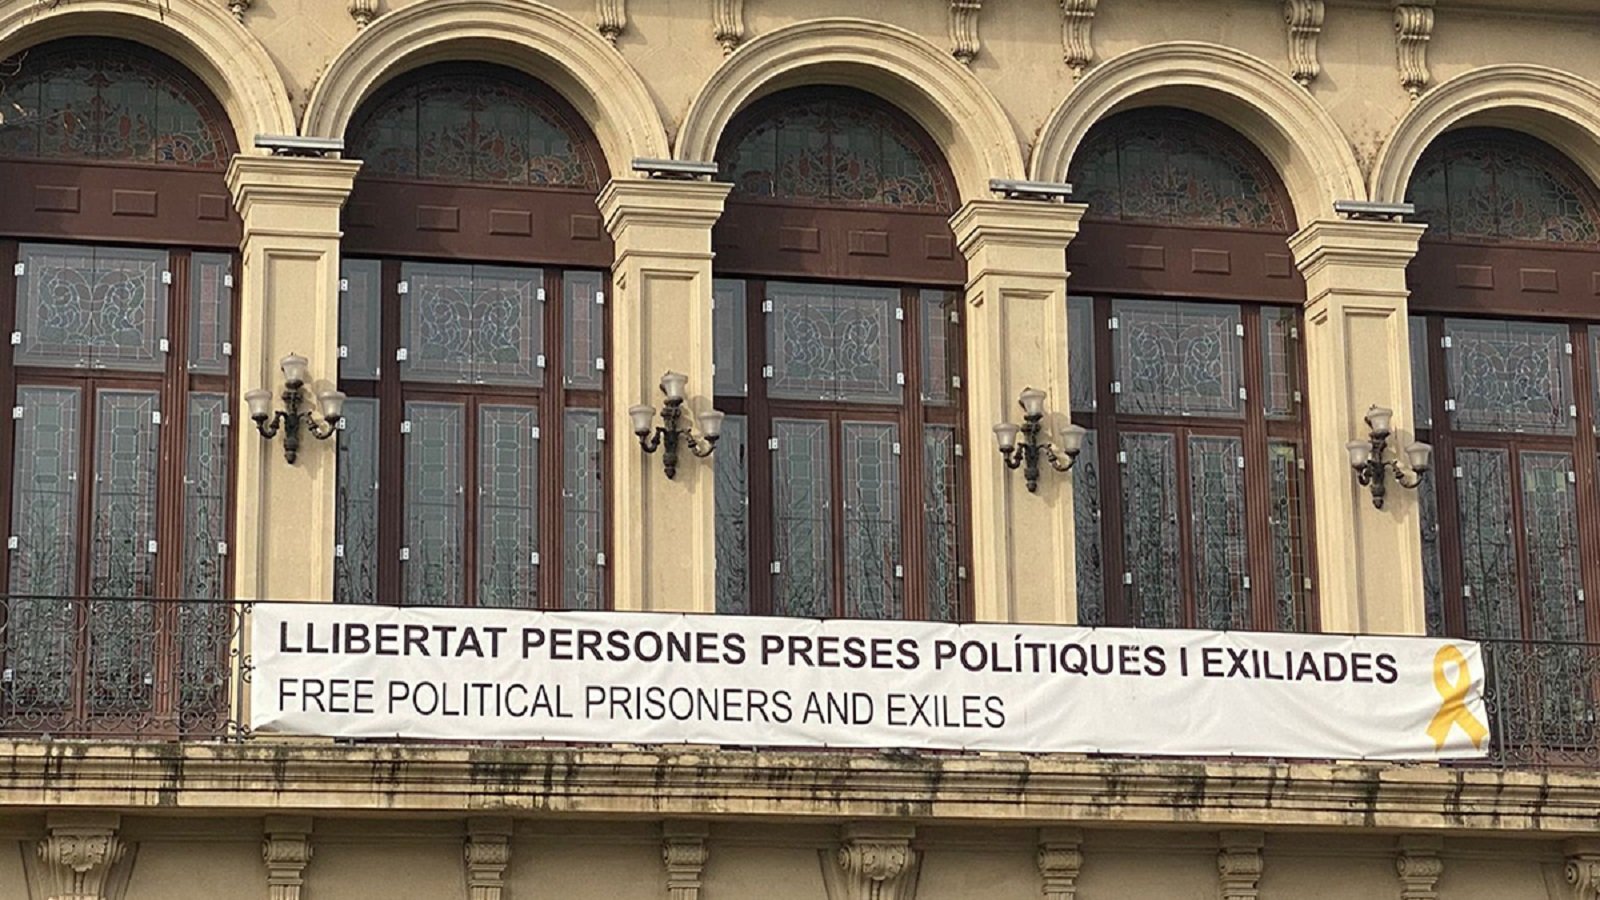 La Junta Electoral també obliga a retirar la pancarta dels presos a Lleida